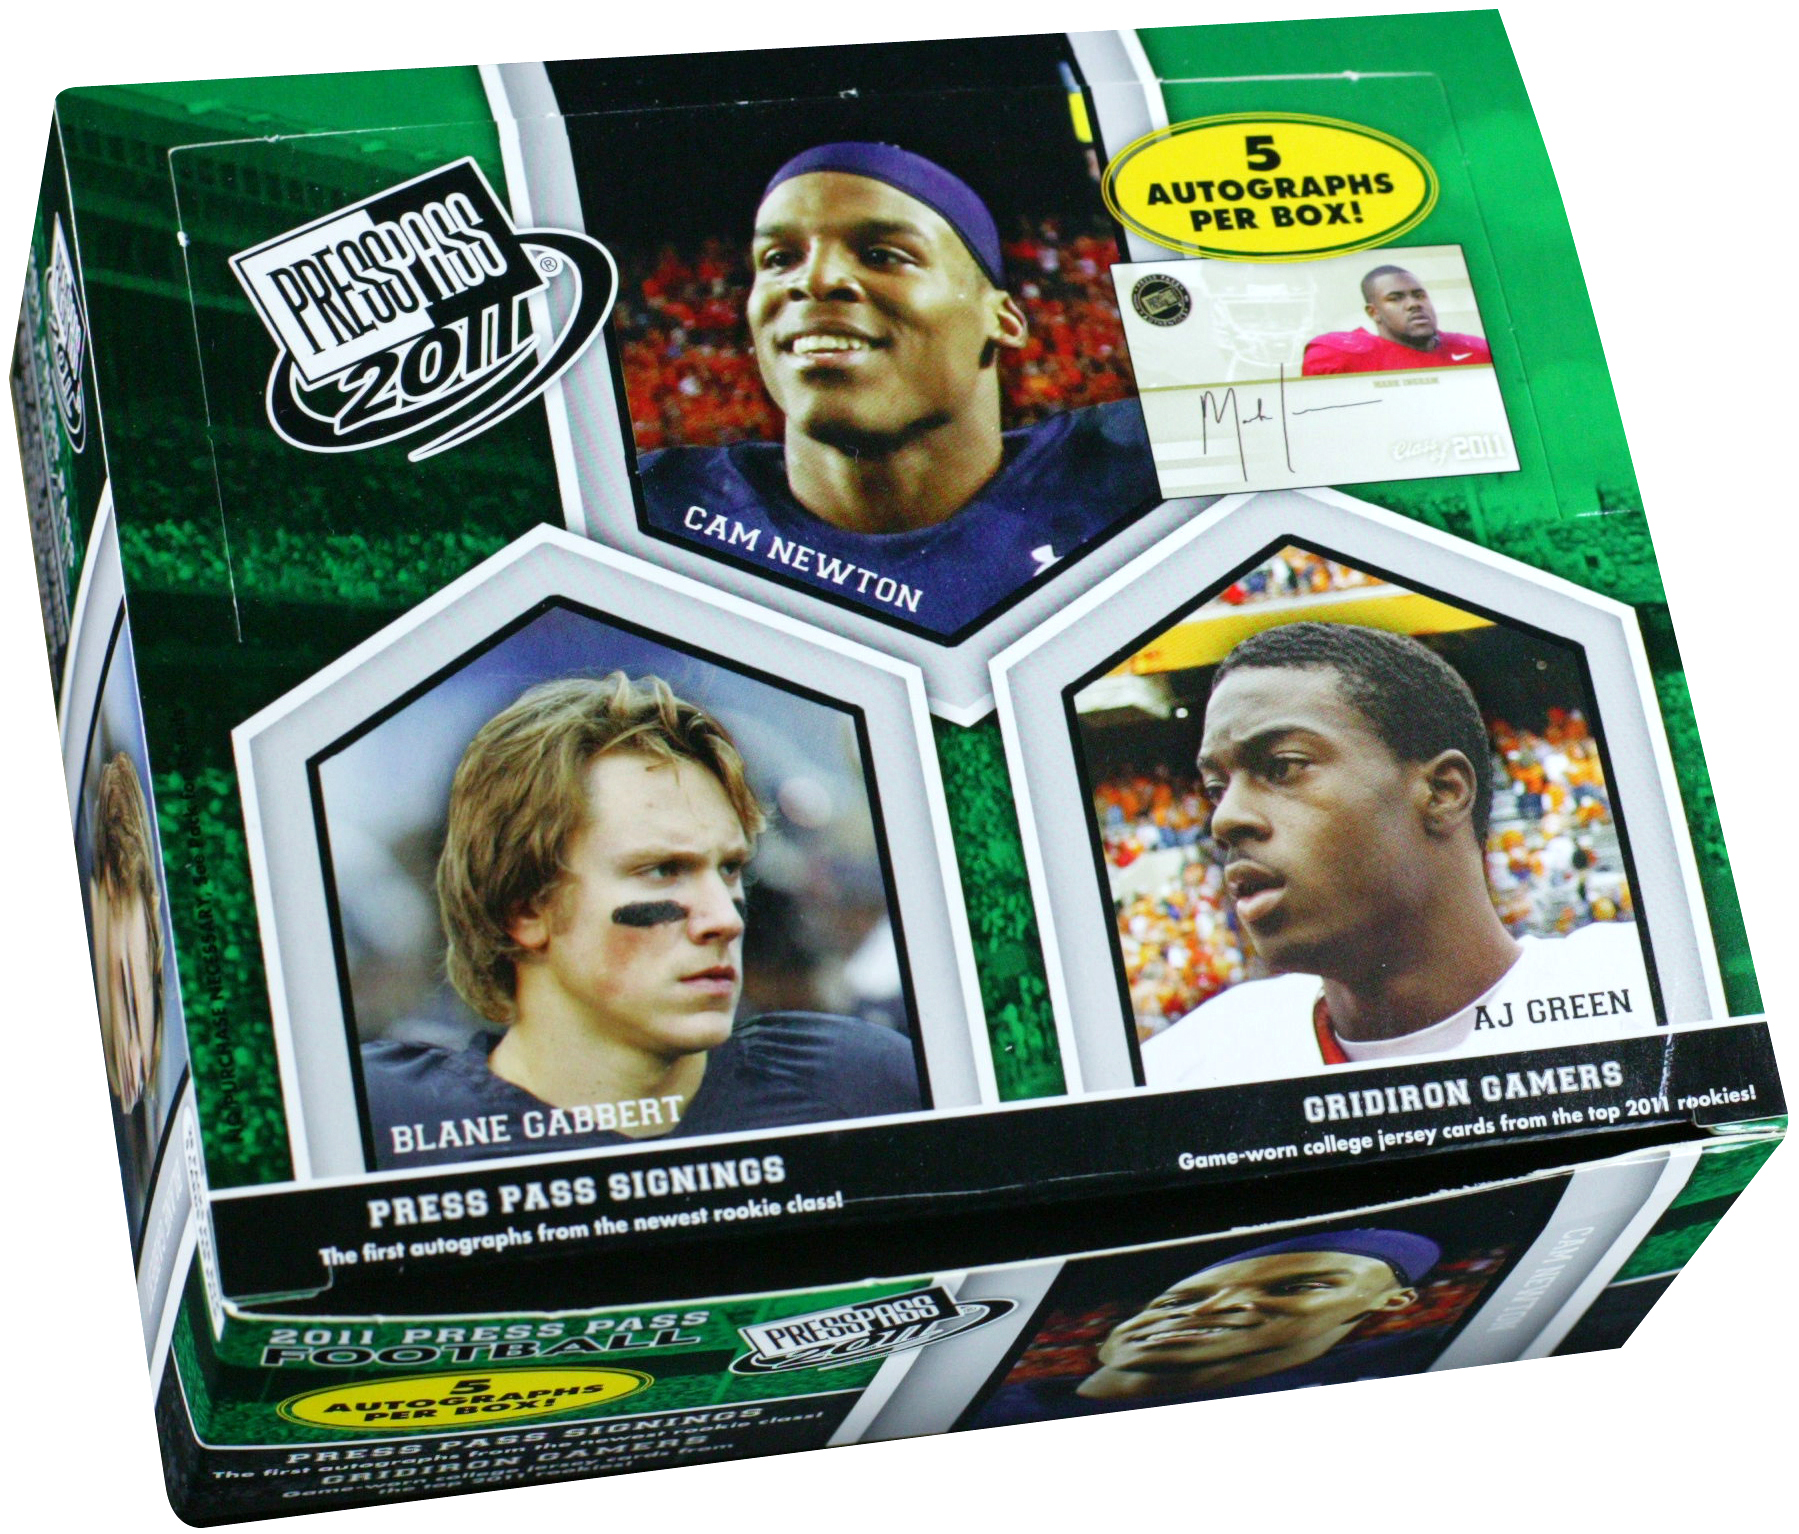 2011 Press Pass Football Hobby Box card image